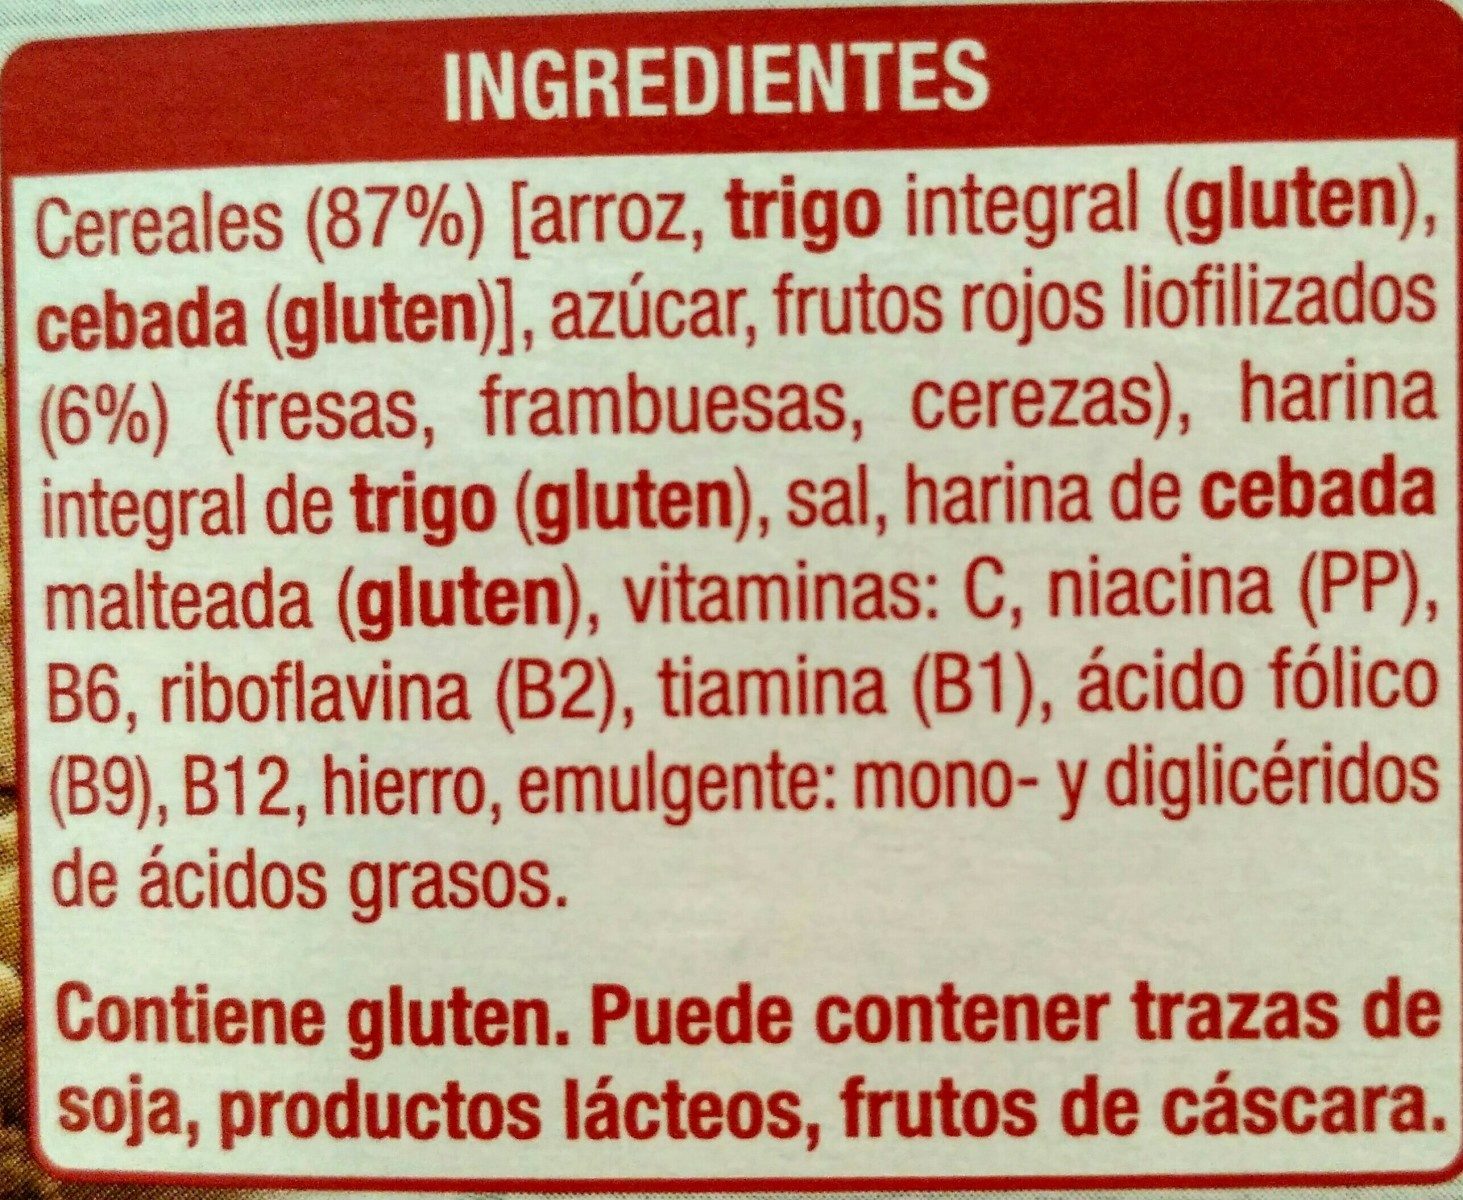 Copos de arroz frutos rojos - Ingredients - es